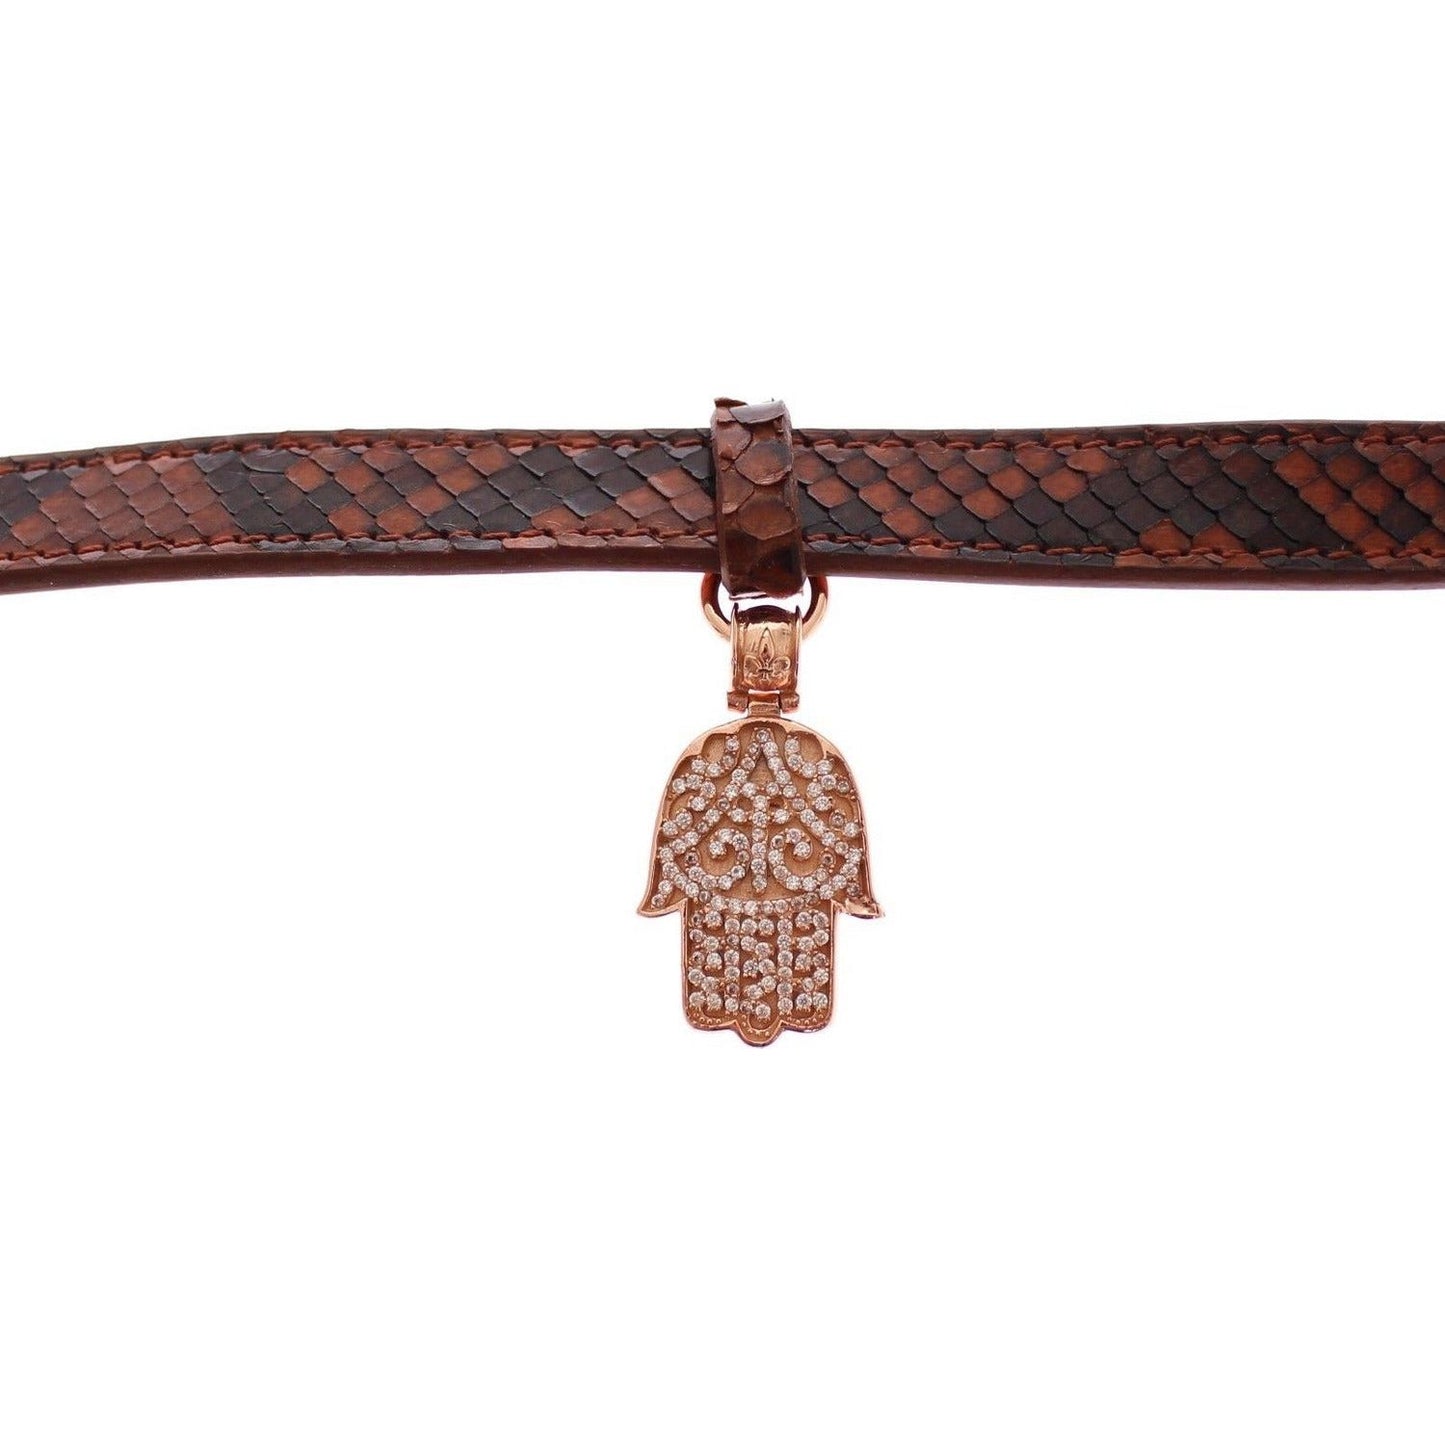 Nialaya Chic Snakeskin Leather & Gold Cuff Bracelet Bracelet cz-hamsa-eye-18k-gold-925-silver-bracelet 72407-cz-hamsa-eye-18k-gold-925-silver-bracelet-4.jpg